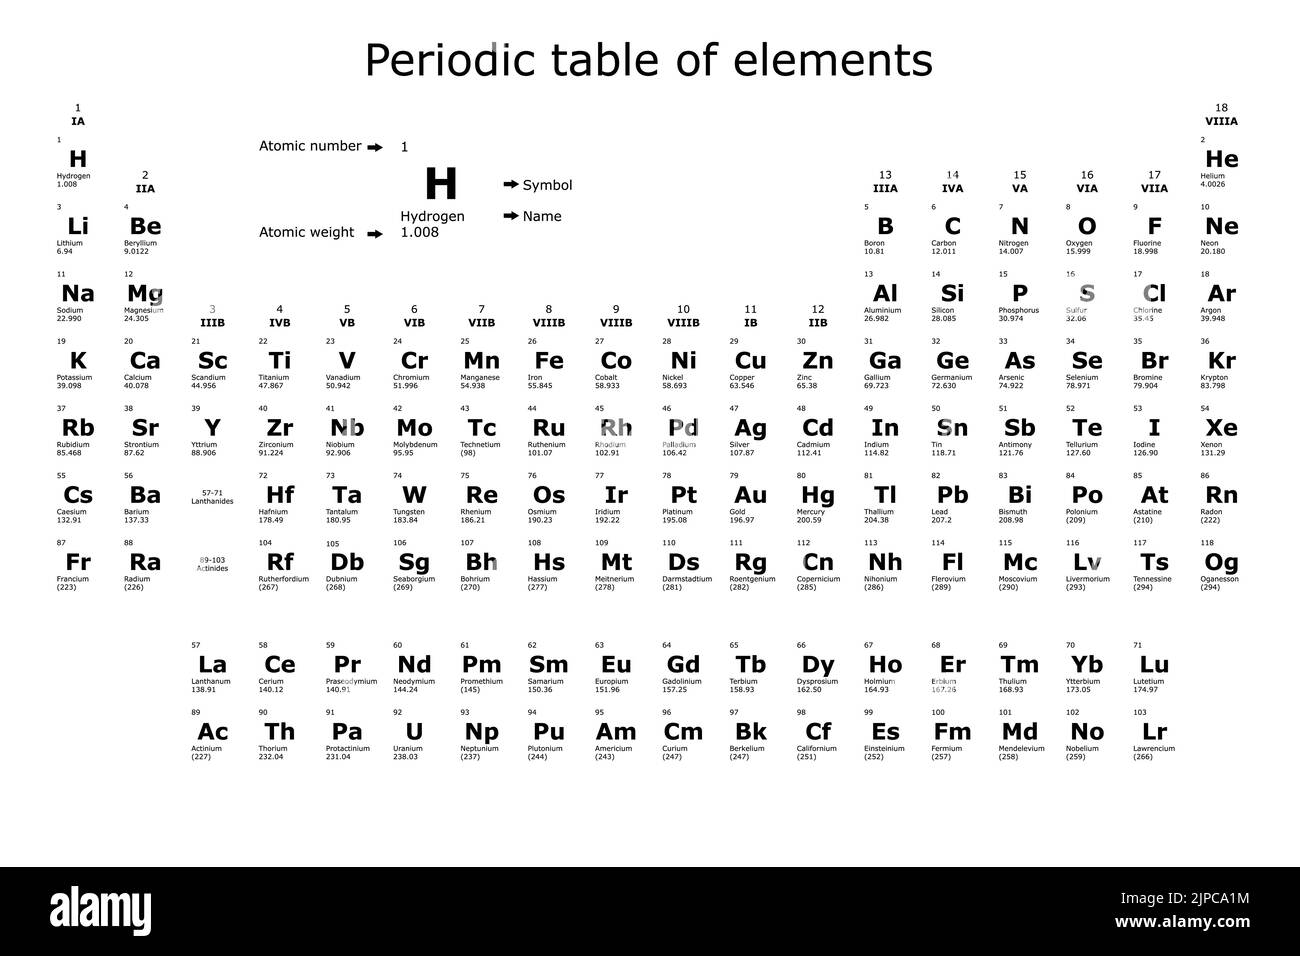 Hintergrund des Periodensystems der chemischen Elemente mit ihrer Ordnungszahl, ihrem Atomgewicht, ihrem Elementnamen und ihrem Symbol auf schwarzem Hintergrund Stock Vektor